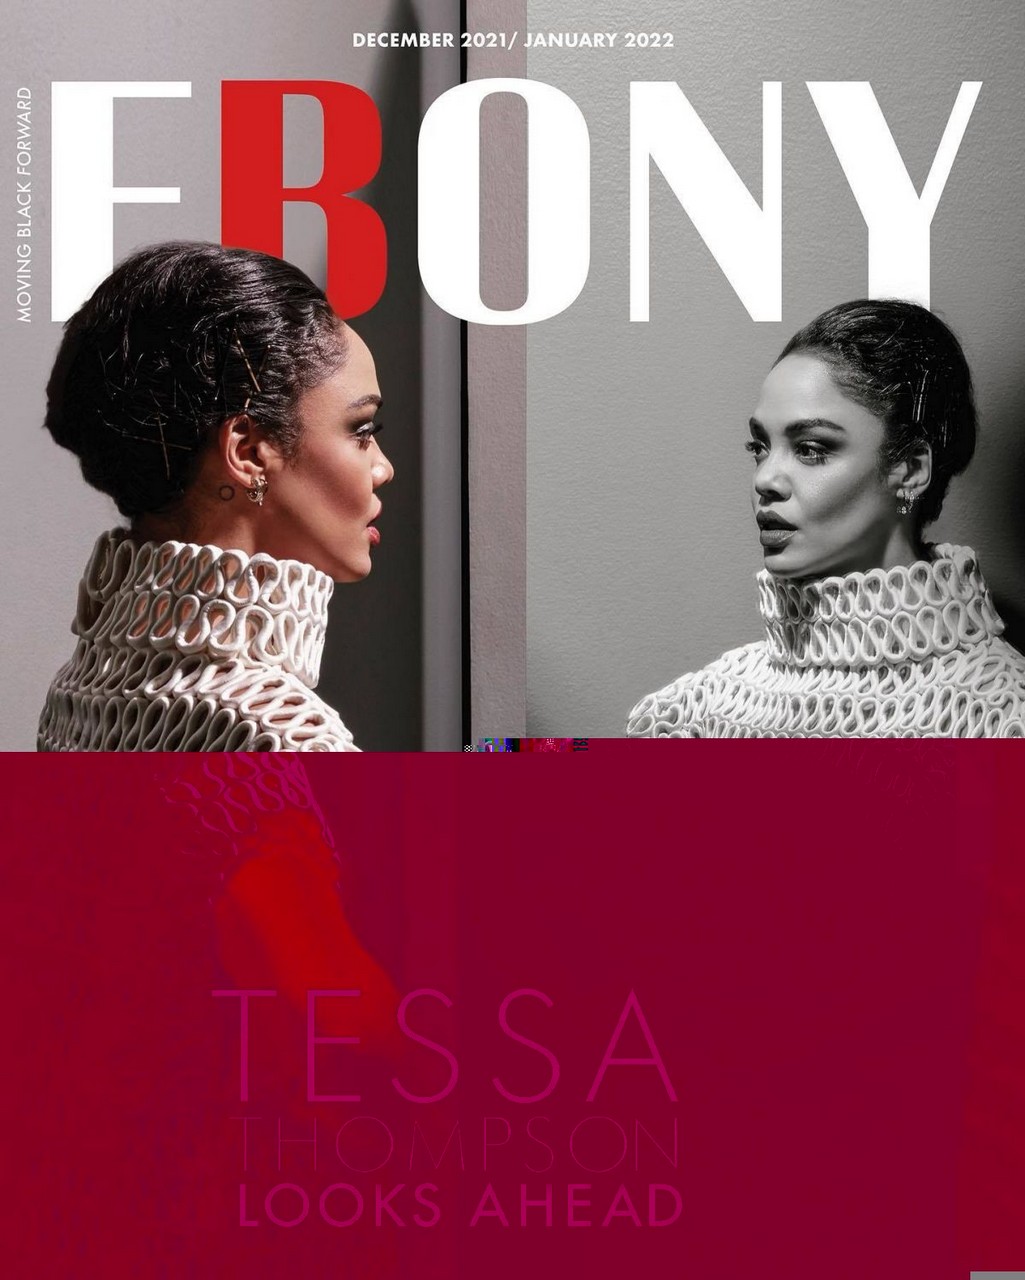 Tessa Thompson For Ebony Magazine December 2021 January